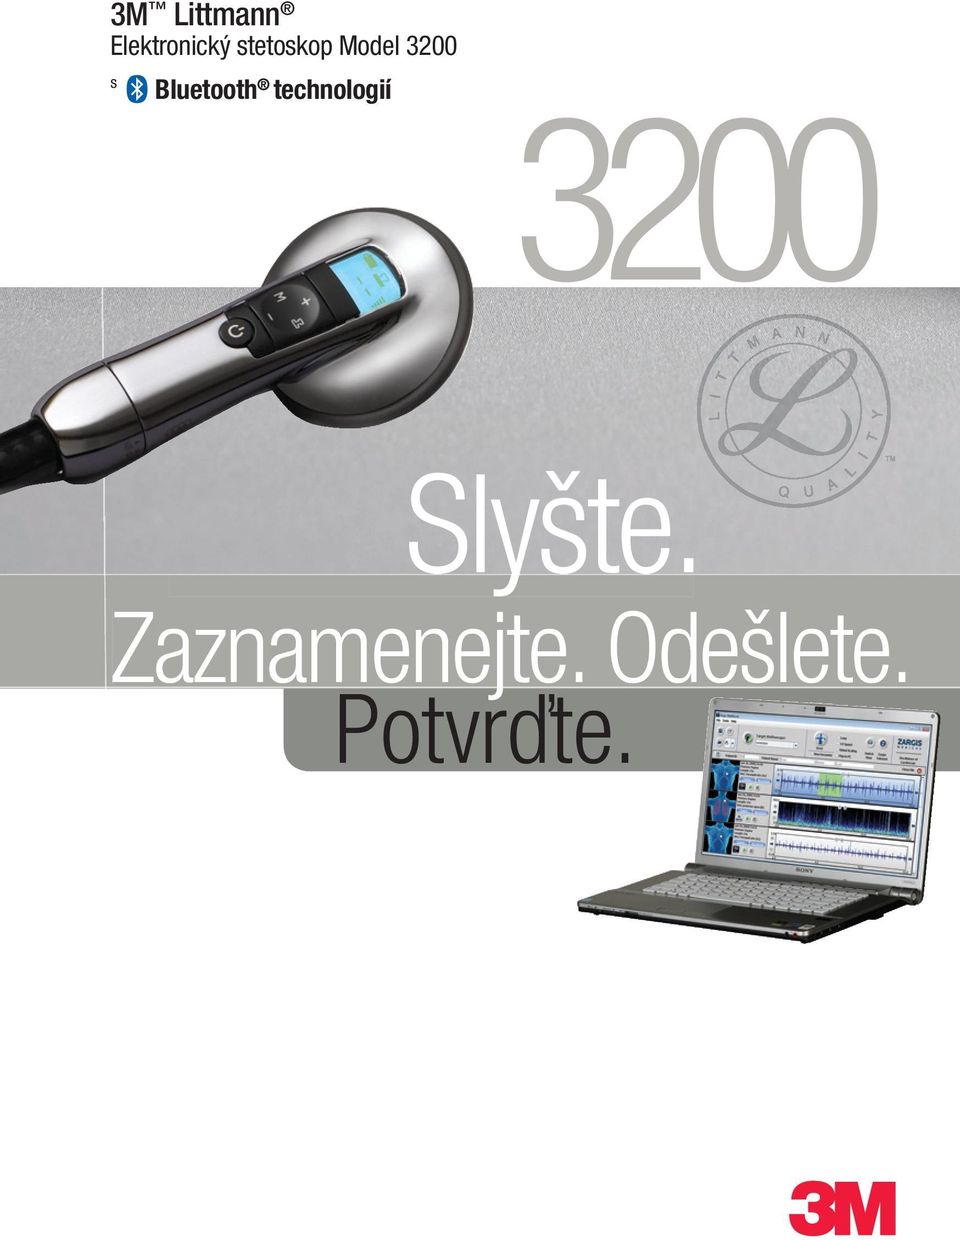 Bluetooth technologií 3200